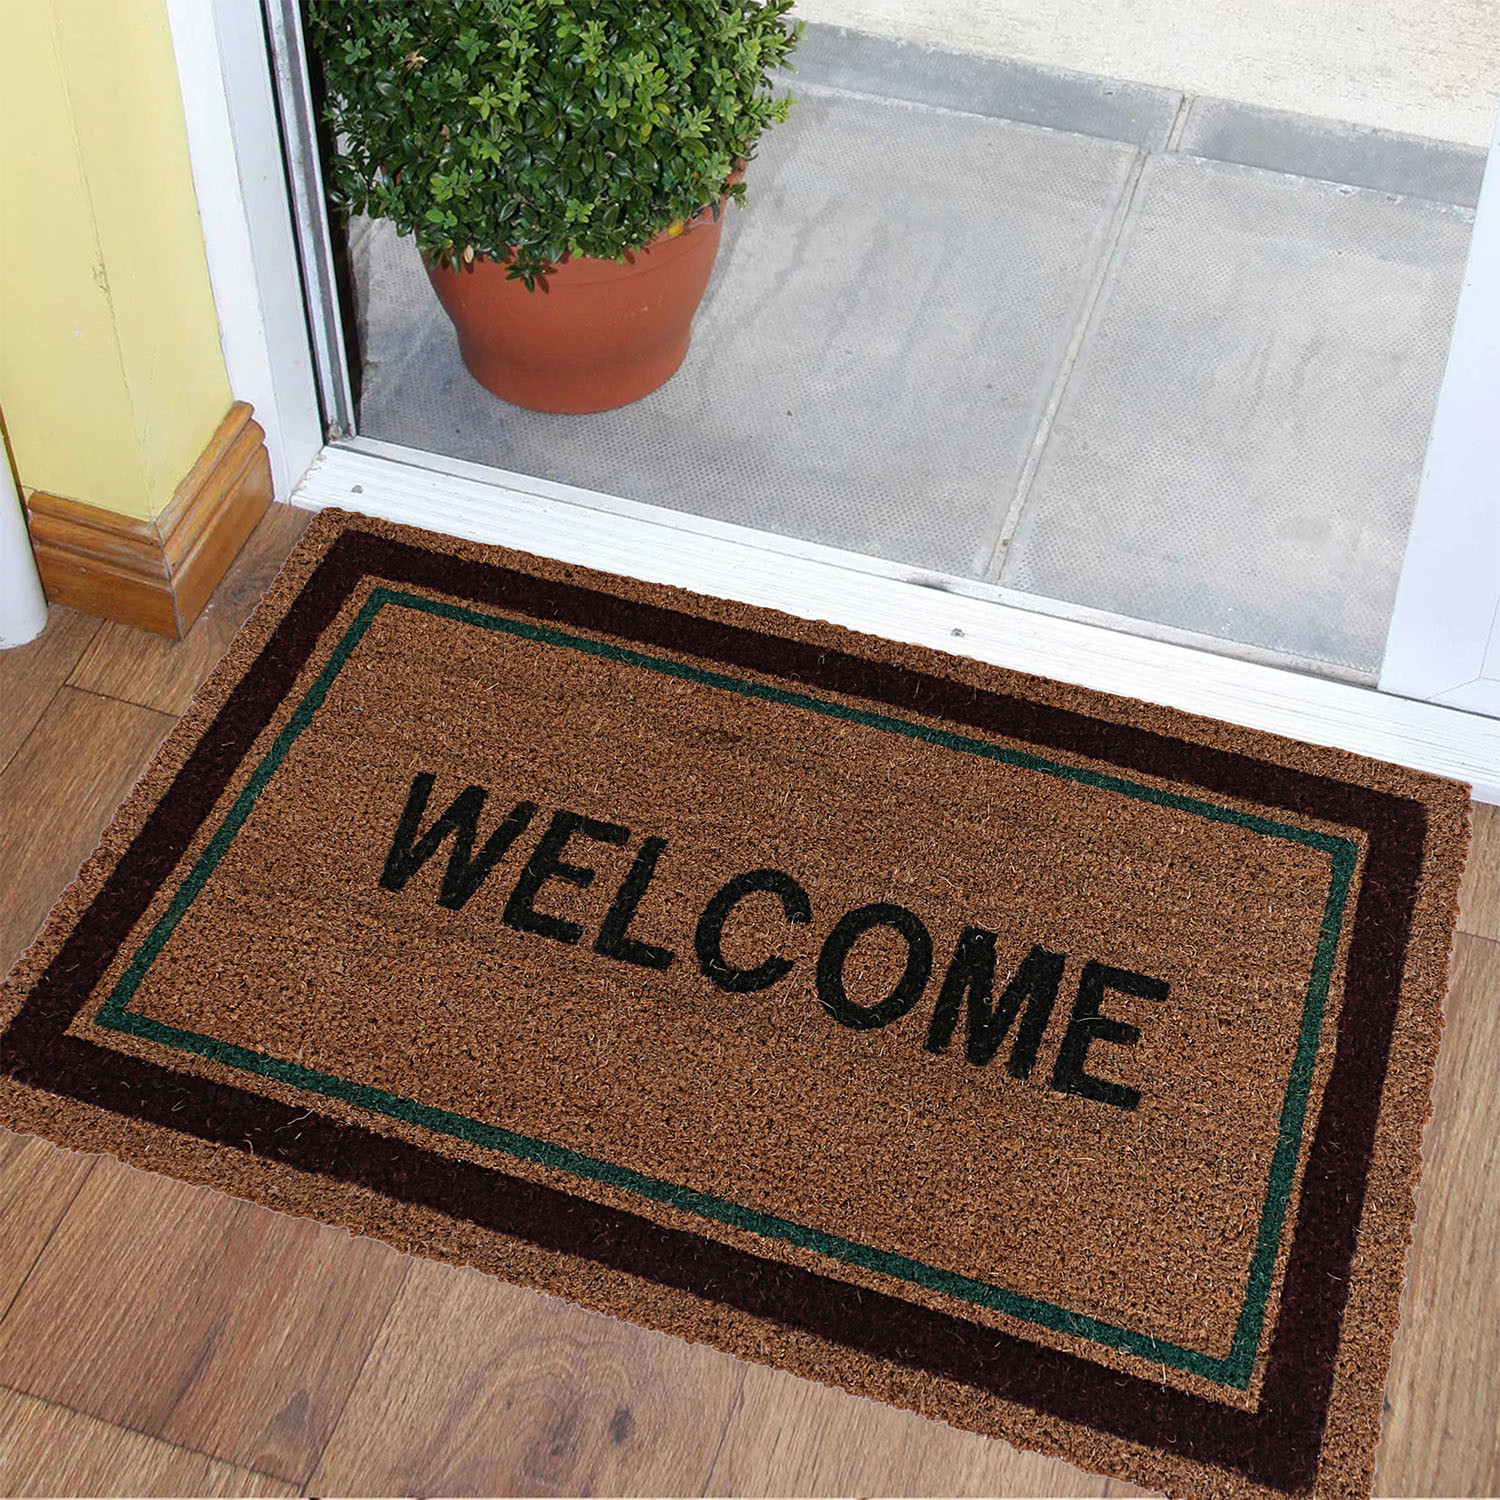 Kuber Industries Door Mat|Polyethylene Durable & Anti-Slip Natural Rectangle Welcome Print Floor Mat|Rug For Indoor or Outdoor, 30x20 Inch (Brown)